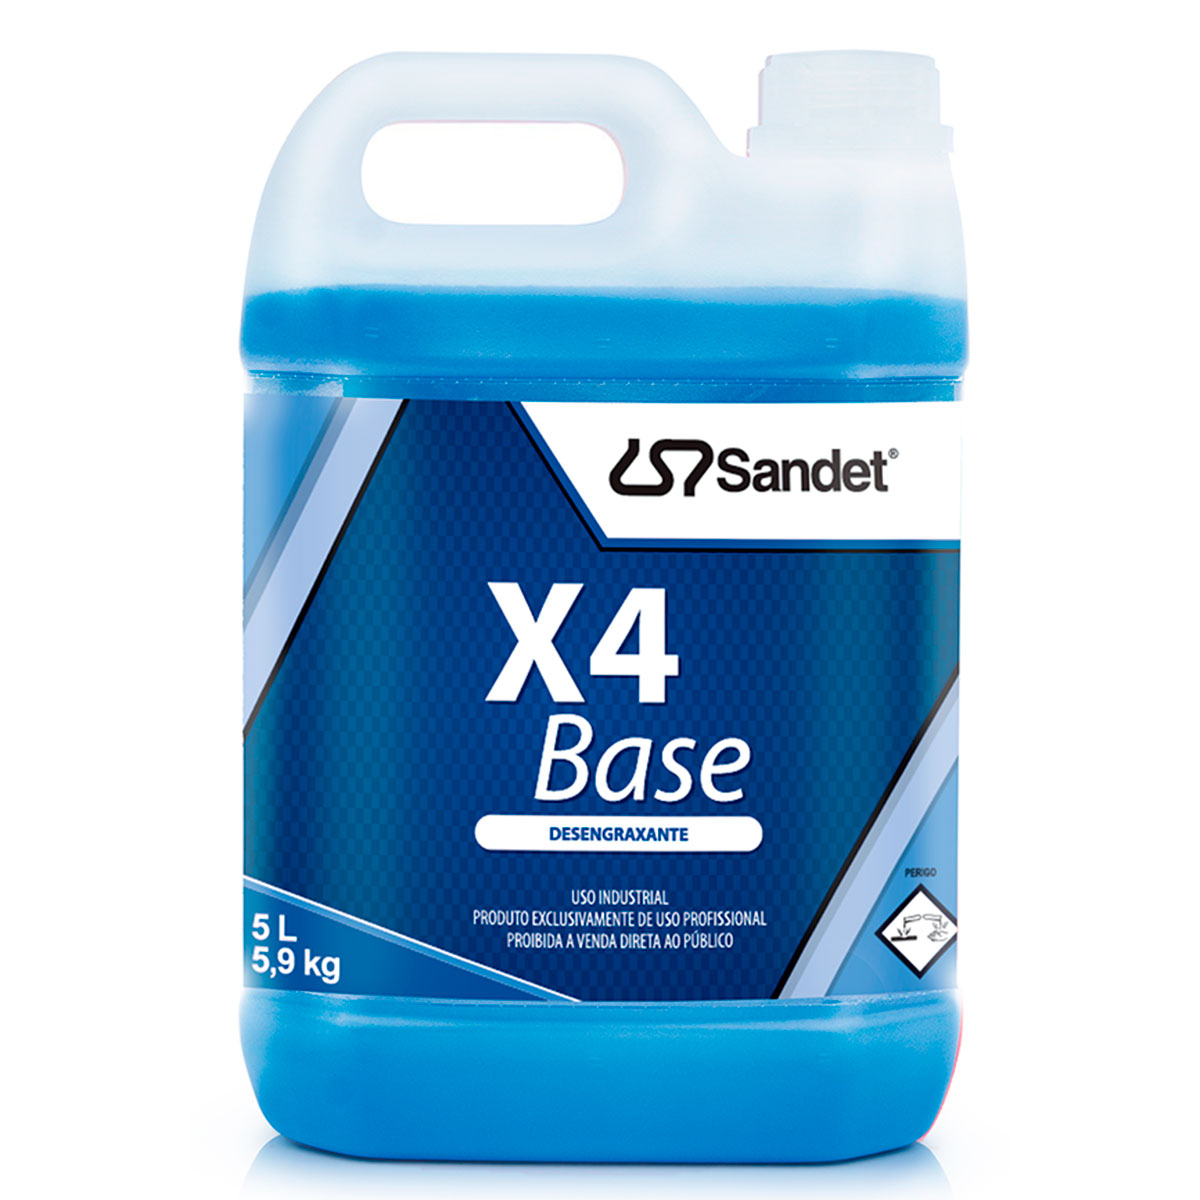 Desengraxante Líquido Sandet X4 Base, Concentrado, Limpeza Pesada, Alcalino - 5 Litros